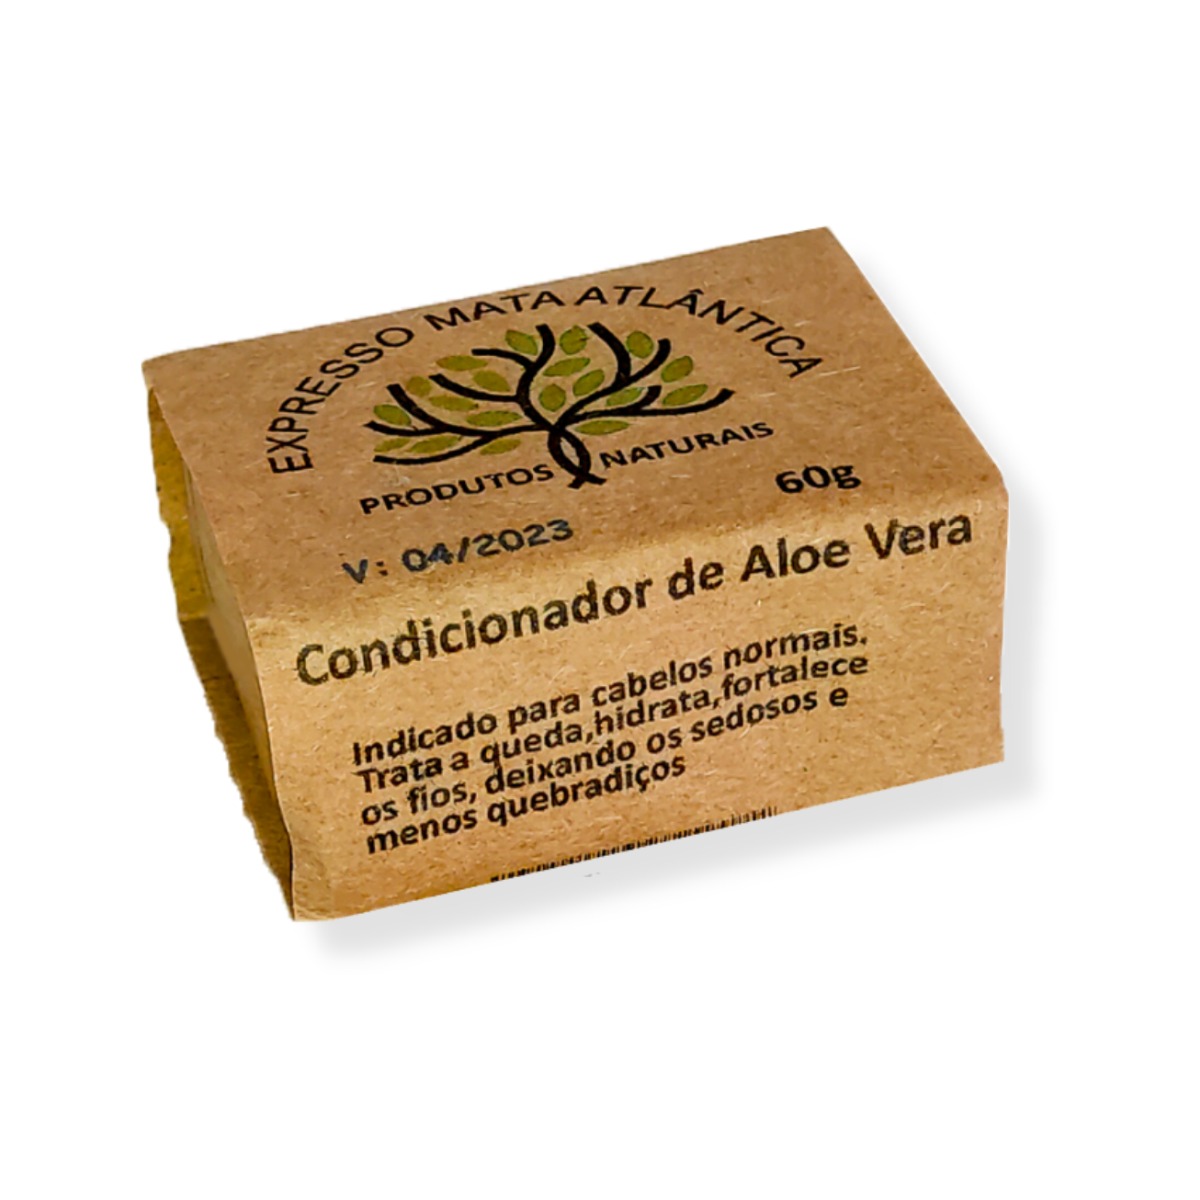 Condicionador barra de Aloe Vera da Expresso Mata Atlântica